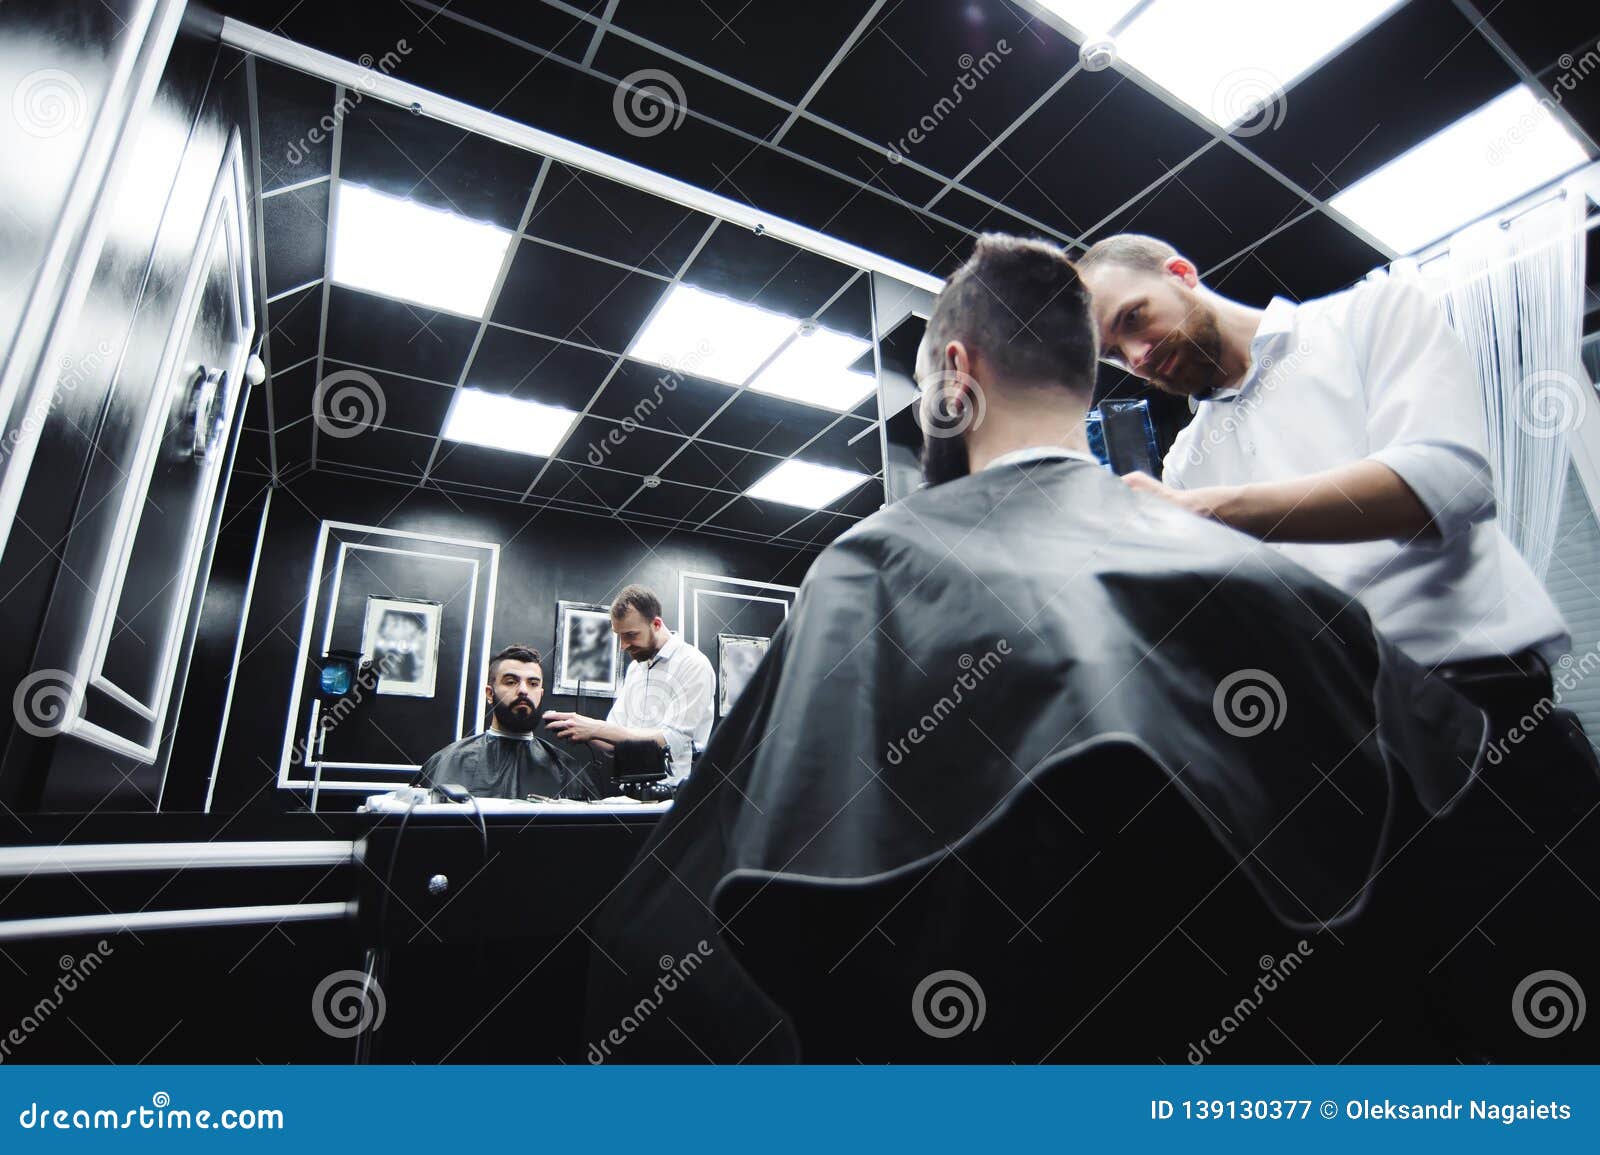 Capelli dei tagli e barba matrici degli uomini nel parrucchiere, parrucchiere. Il Master taglia i capelli e la barba degli uomini nel parrucchiere, parrucchiere fa l'acconciatura per un giovane